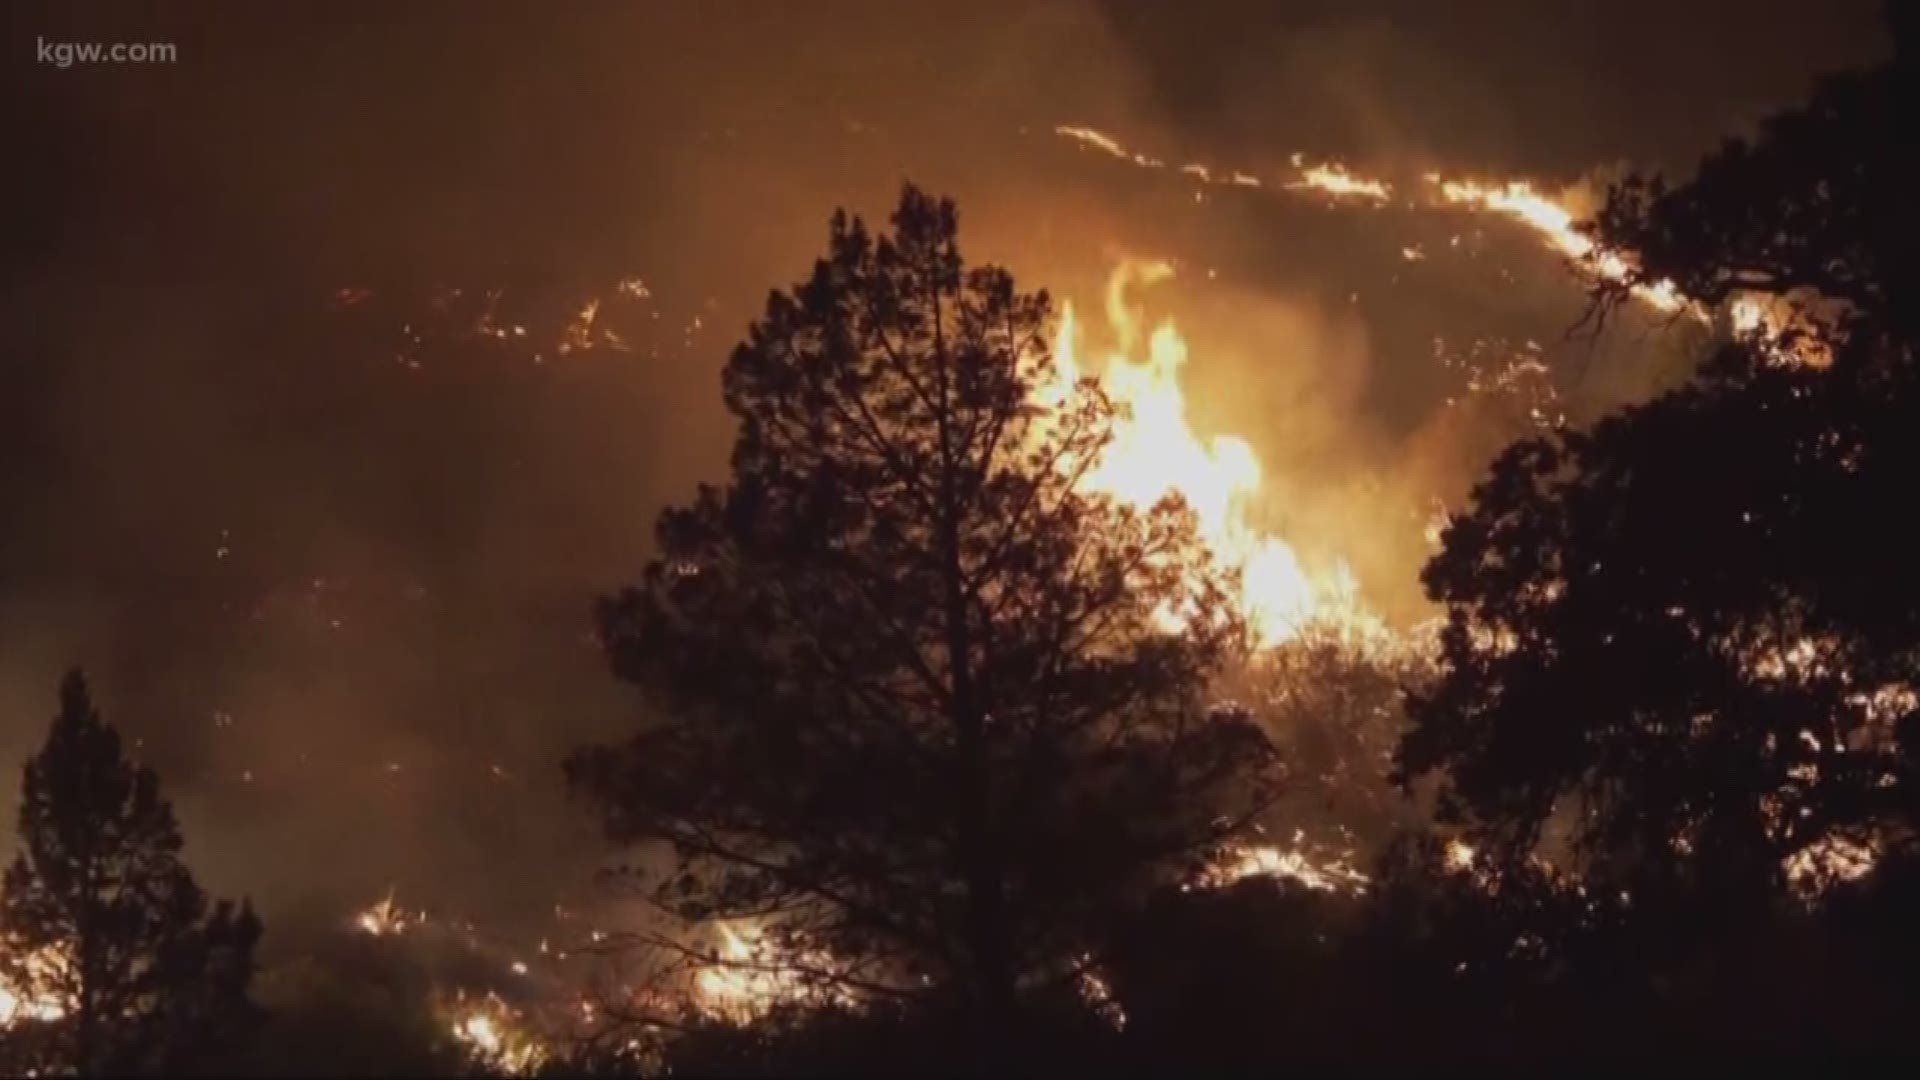 Klamathon Fire now at 30,500 acres